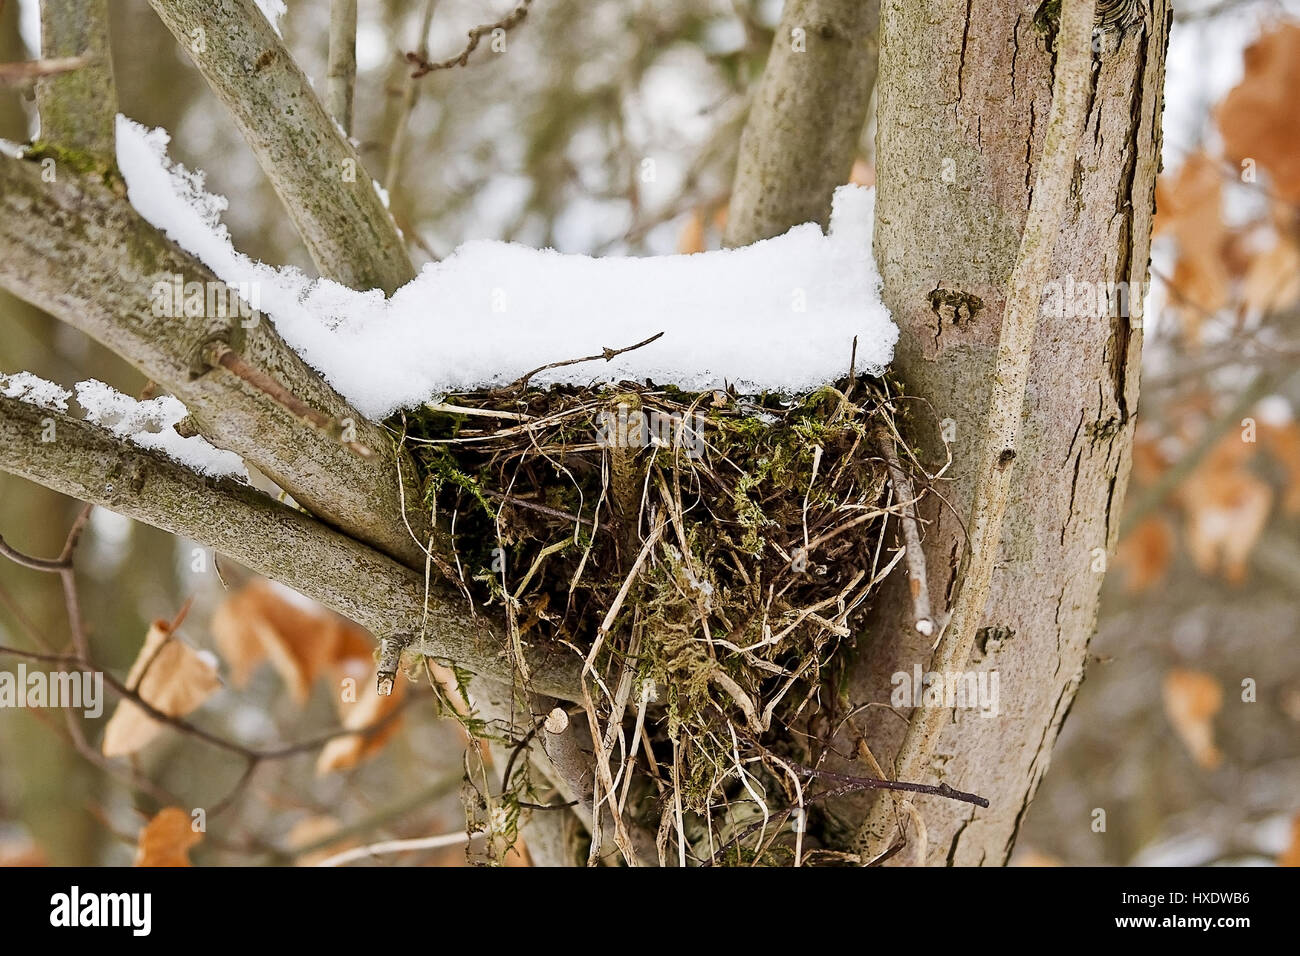 Bird's nest with a bonnet of snow, Bird's nest with a cap of snow |, Vogelnest mit einer Haube aus Schnee |Bird's nest with a cap of snow| Stock Photo